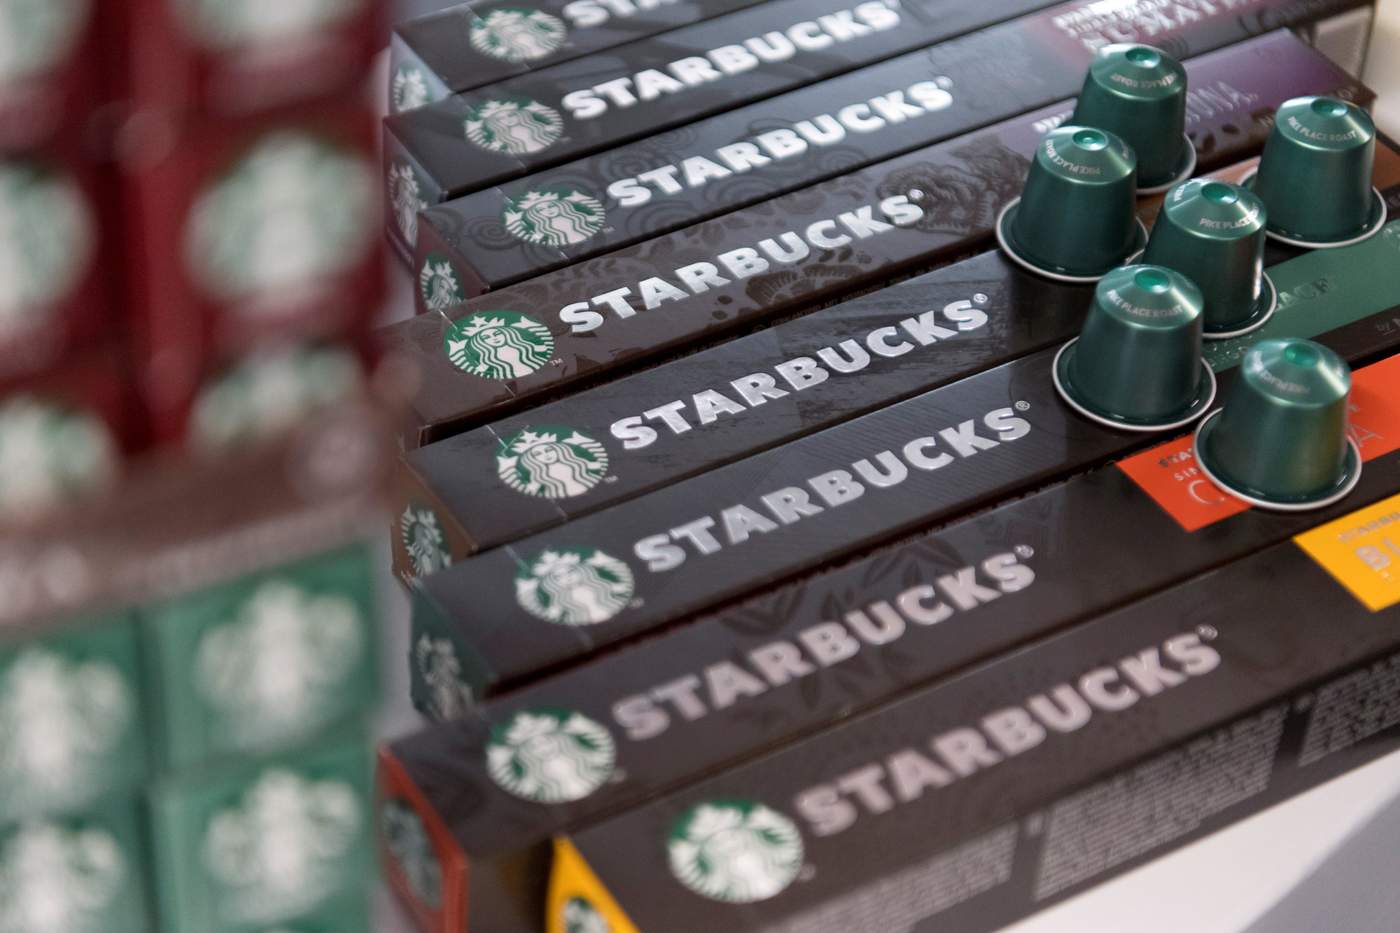 El operador de restaurantes y cafeterías Alsea realizó la firma del contrato con Starbucks para operar y desarrollar establecimientos de la marca en Holanda, Bélgica y Luxemburgo. (ARCHIVO)